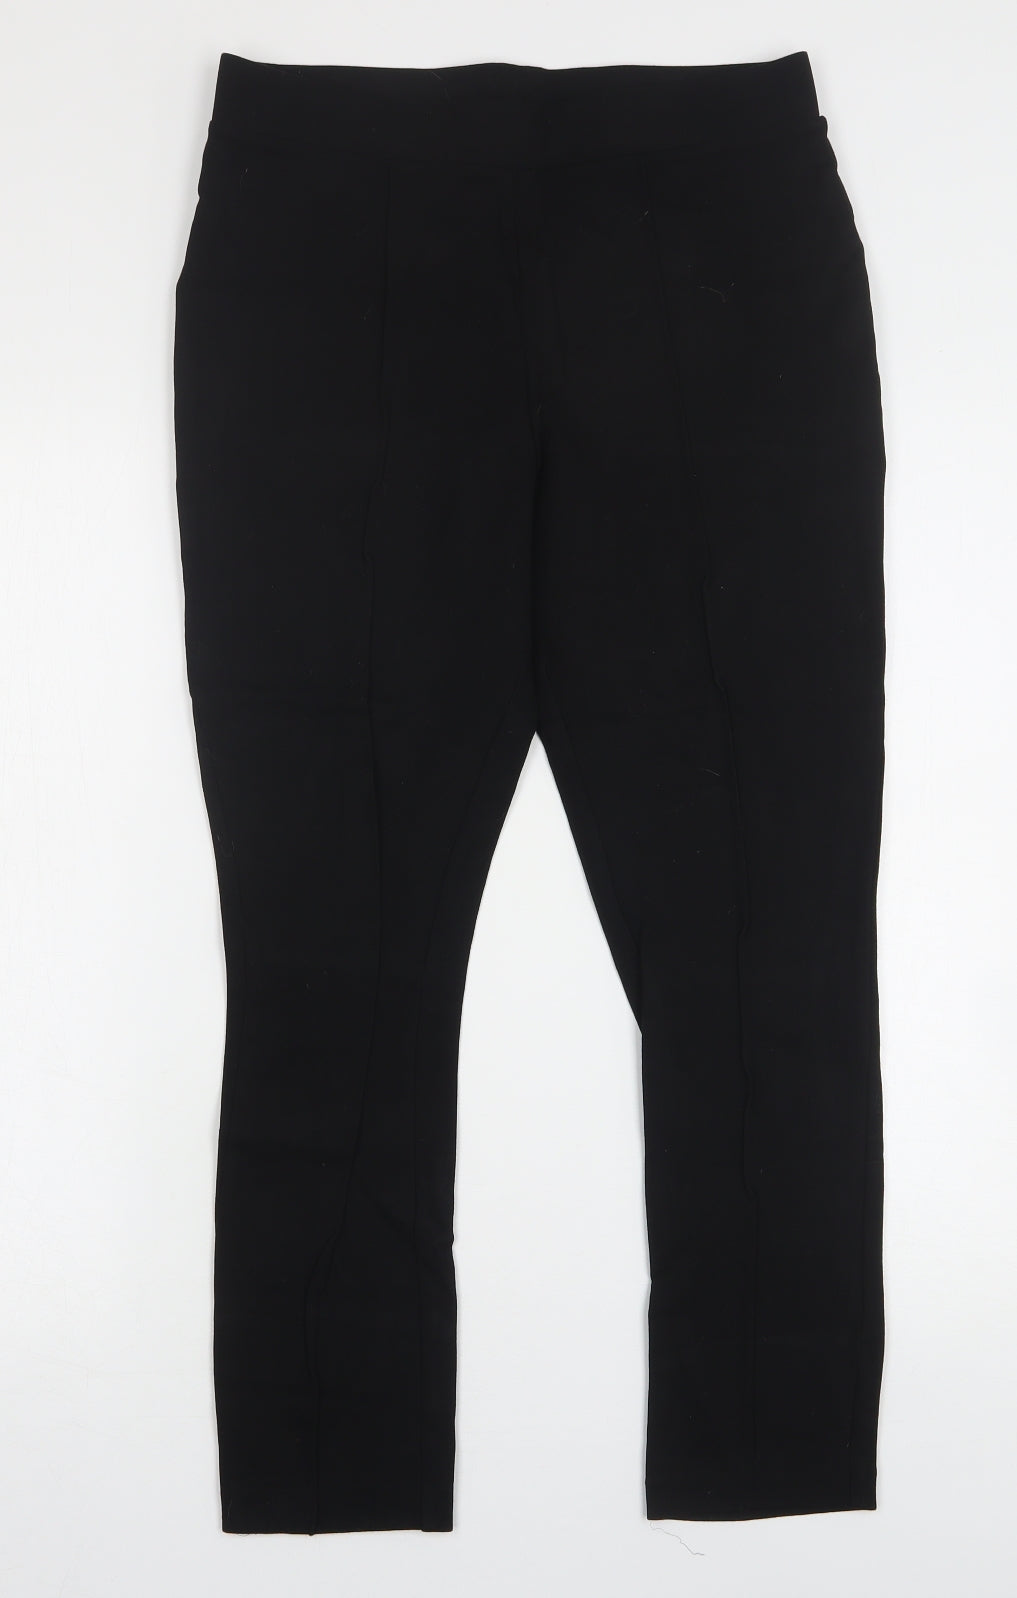 TU Womens Black Viscose Capri Leggings Size 14 L26 in – Preworn Ltd